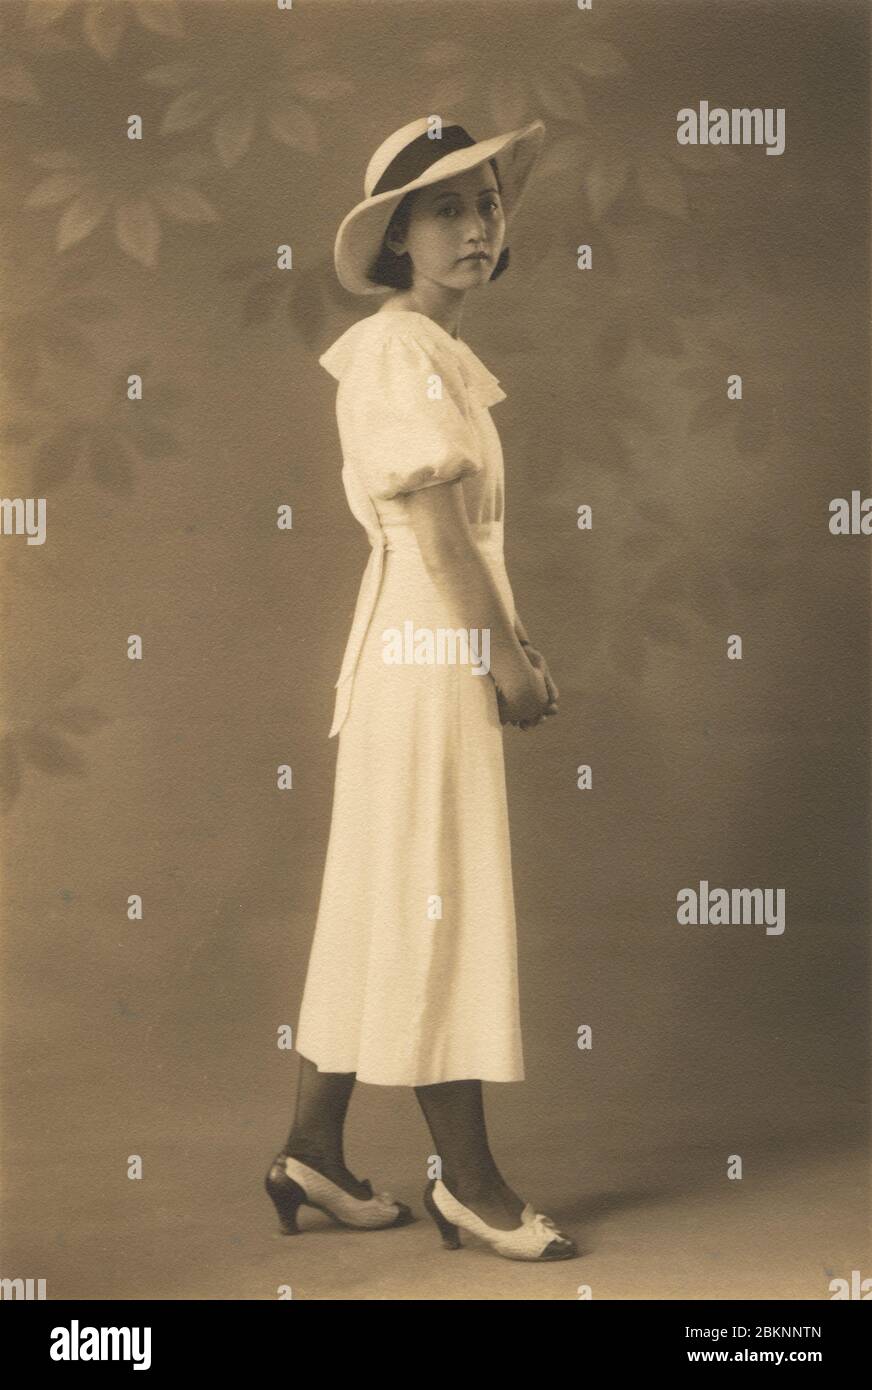 [ 1930er Jahre Japan - Junge Japanerin ] - Junge Japanerin in modernem Kleid, Hut und Frisur. Silberdruck mit Vintage-Gelatine aus dem 20. Jahrhundert. Stockfoto